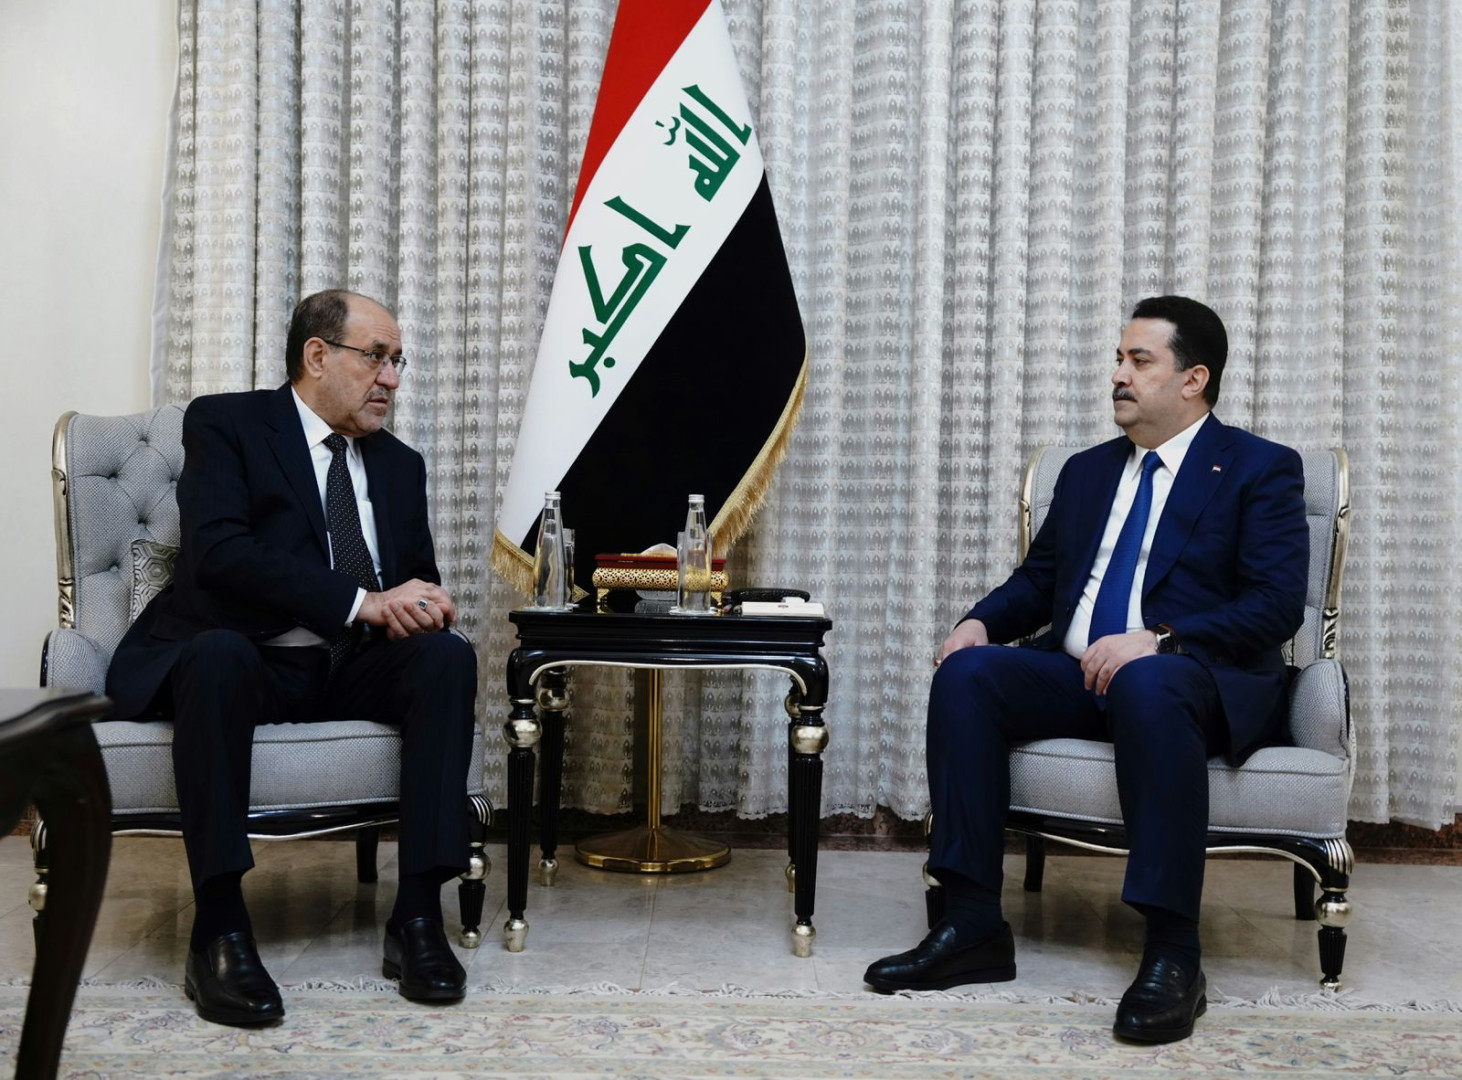 Al-Sudani and Al-Maliki discuss government priorities